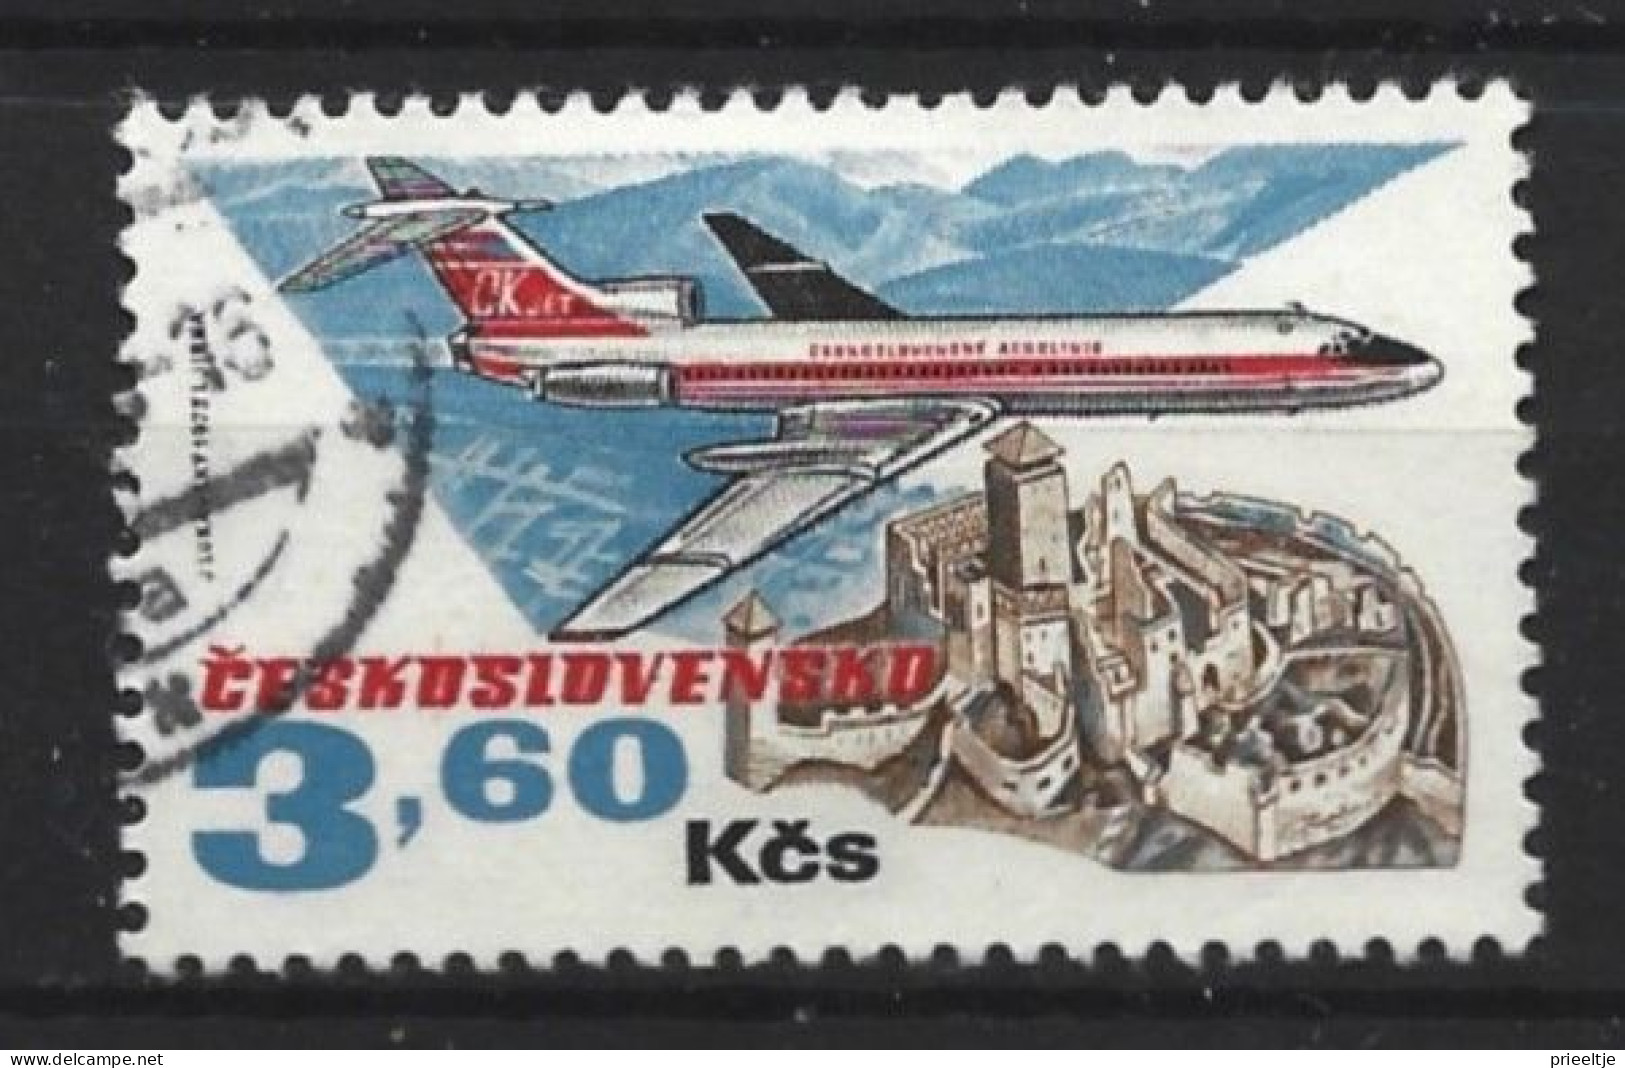 Ceskoslovensko 1973 Airplane Y.T.  2016 (0) - Oblitérés